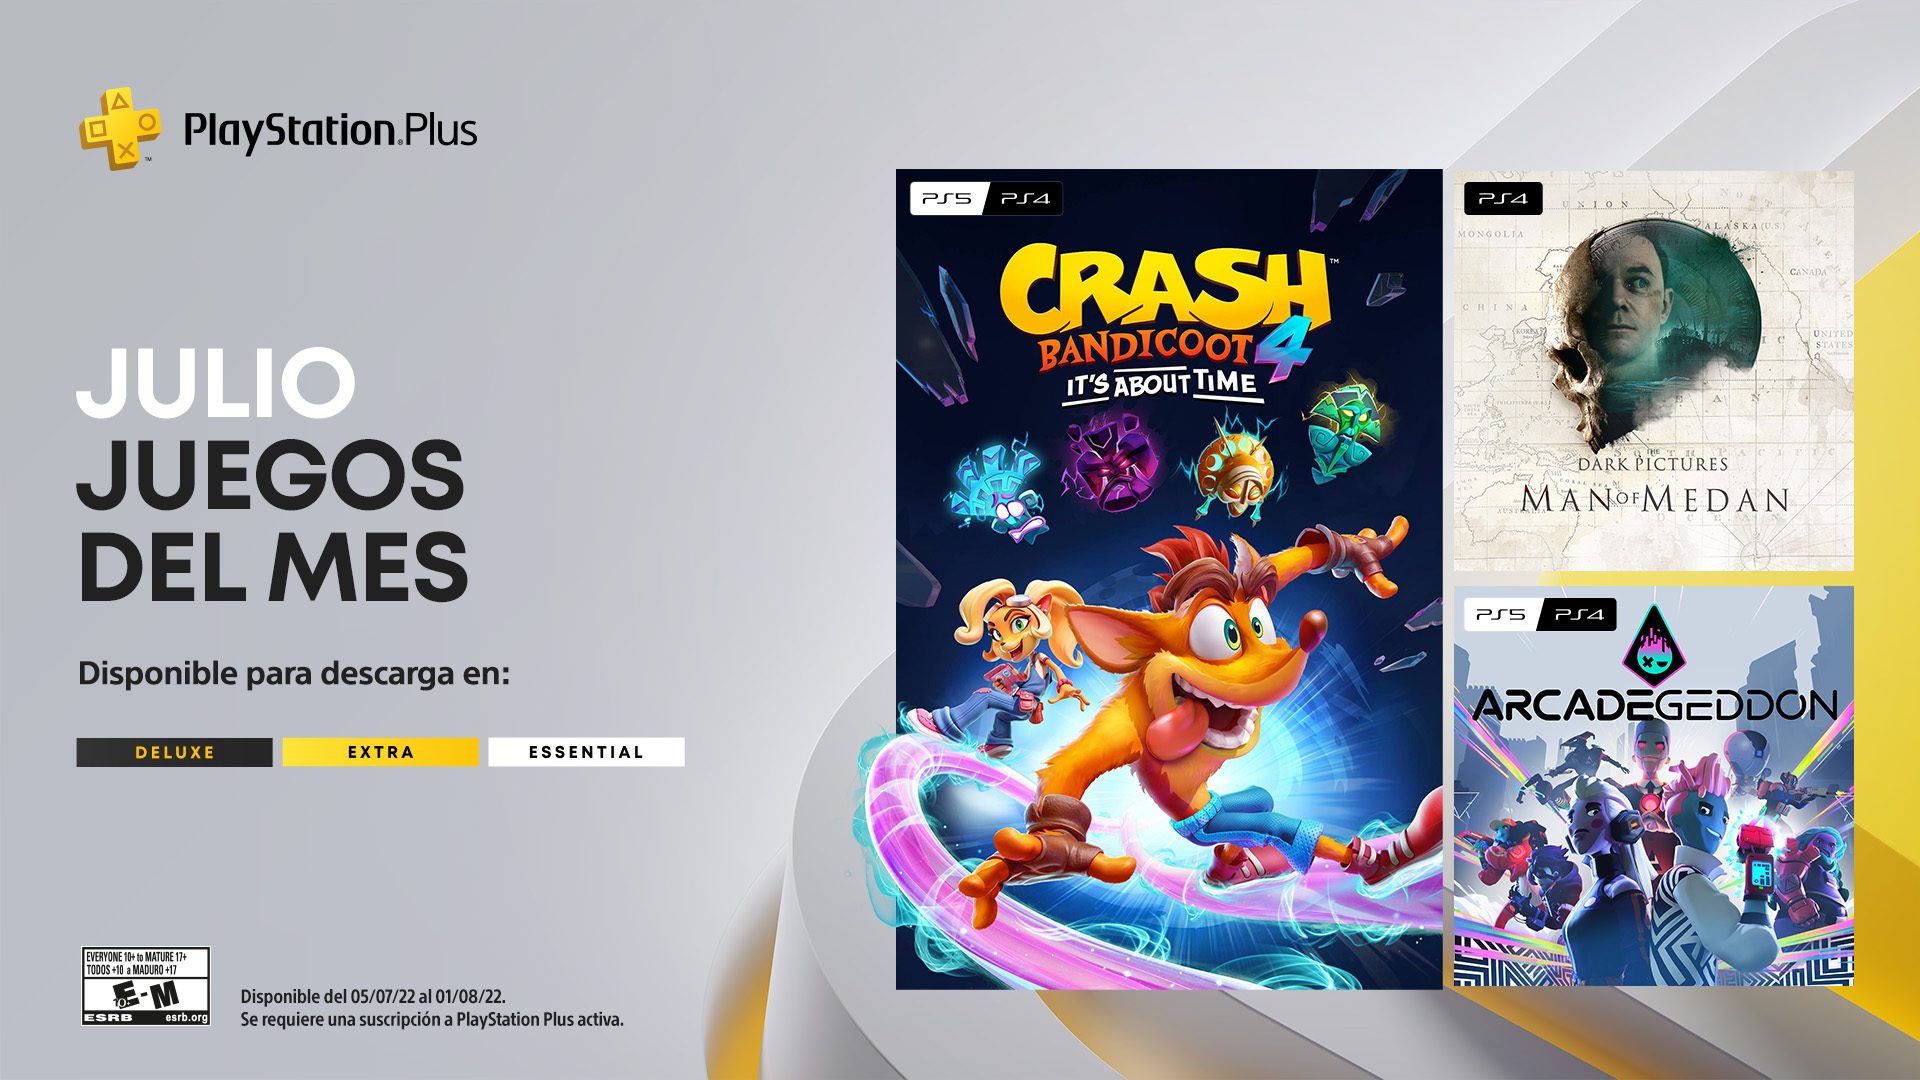 PlayStation®Plus  Cientos de juegos para descargar y jugar